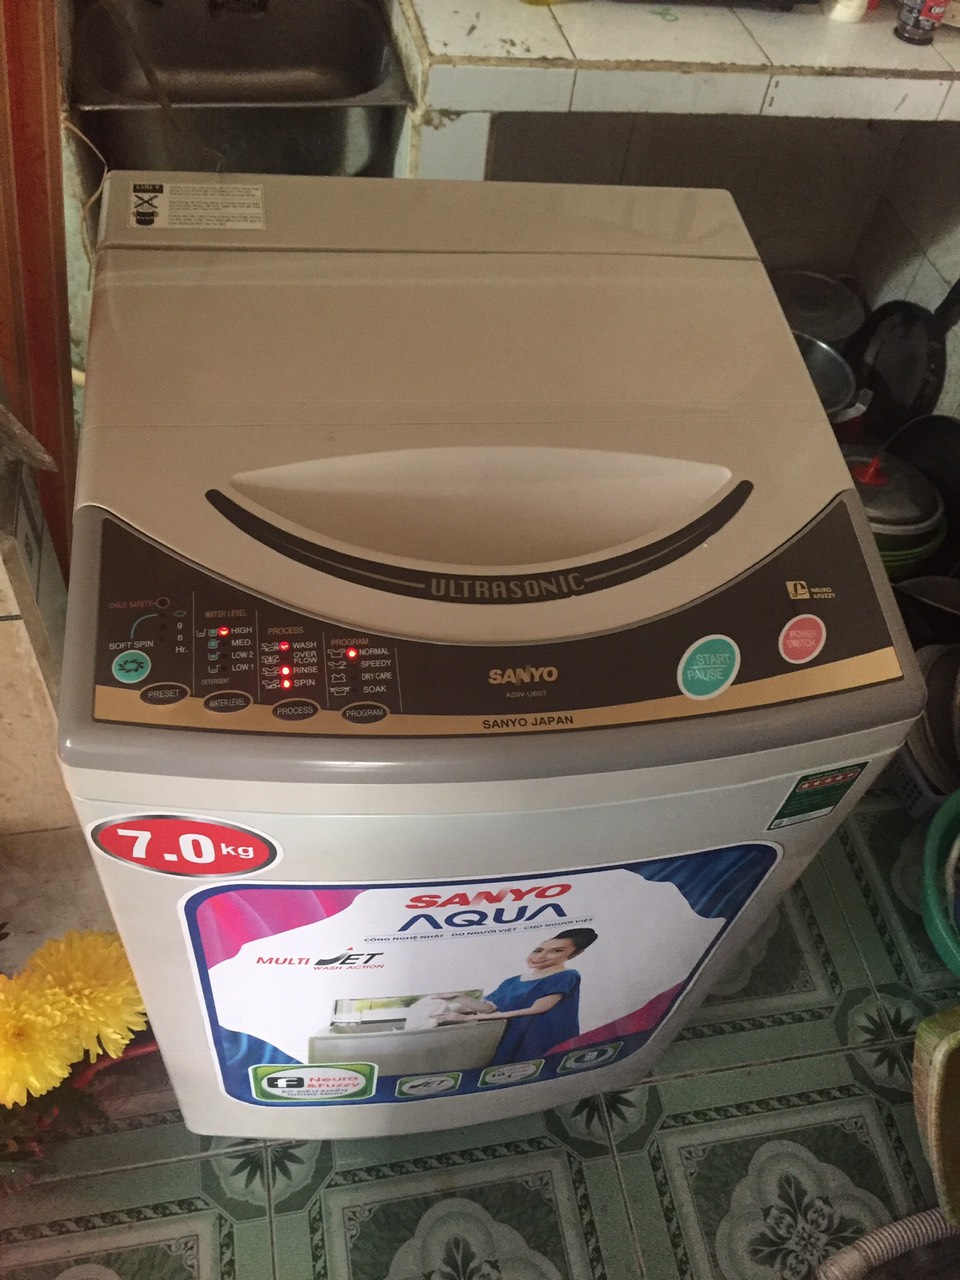 Máy Giặt SANYO 7kg ngoại hình máy mới đẹp 92% 2